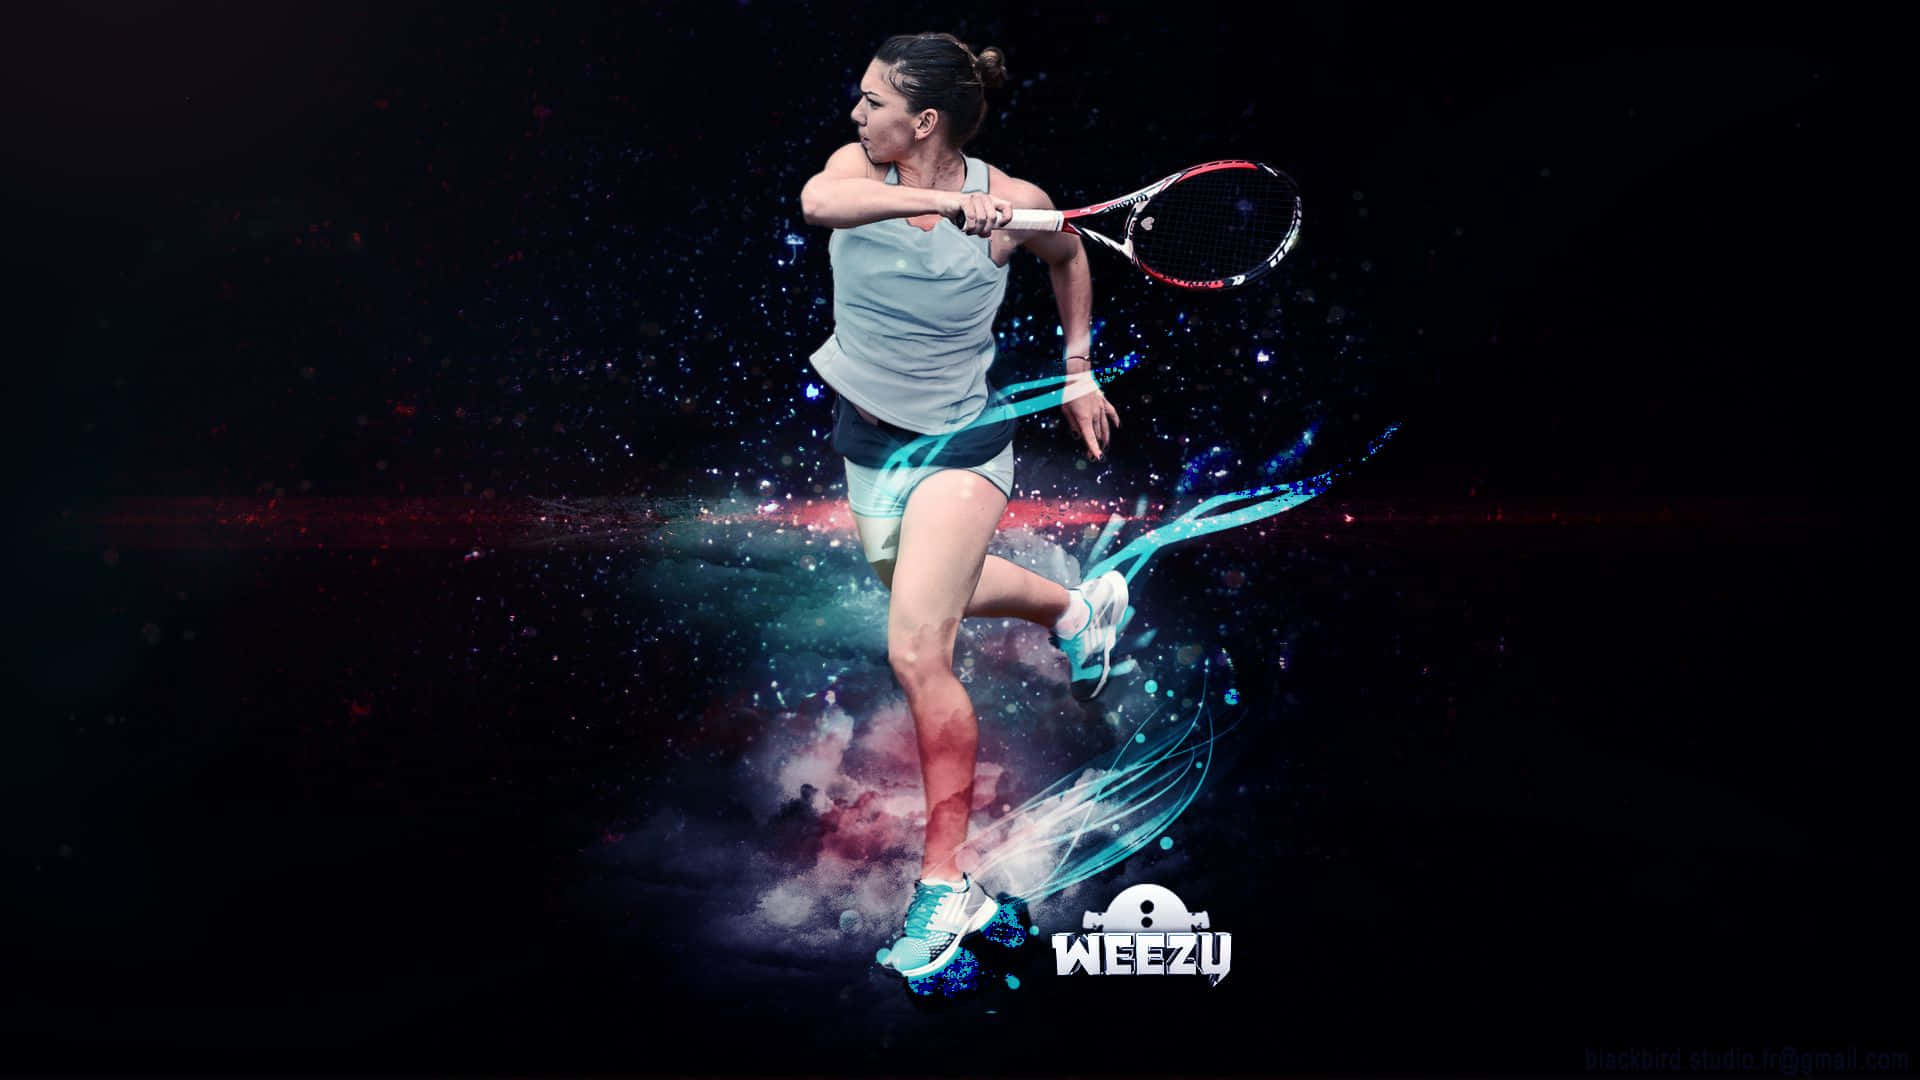 Hdhintergrundbild Von Simona Halep, Russische Tennisspielerin, Als Digitale Kunst